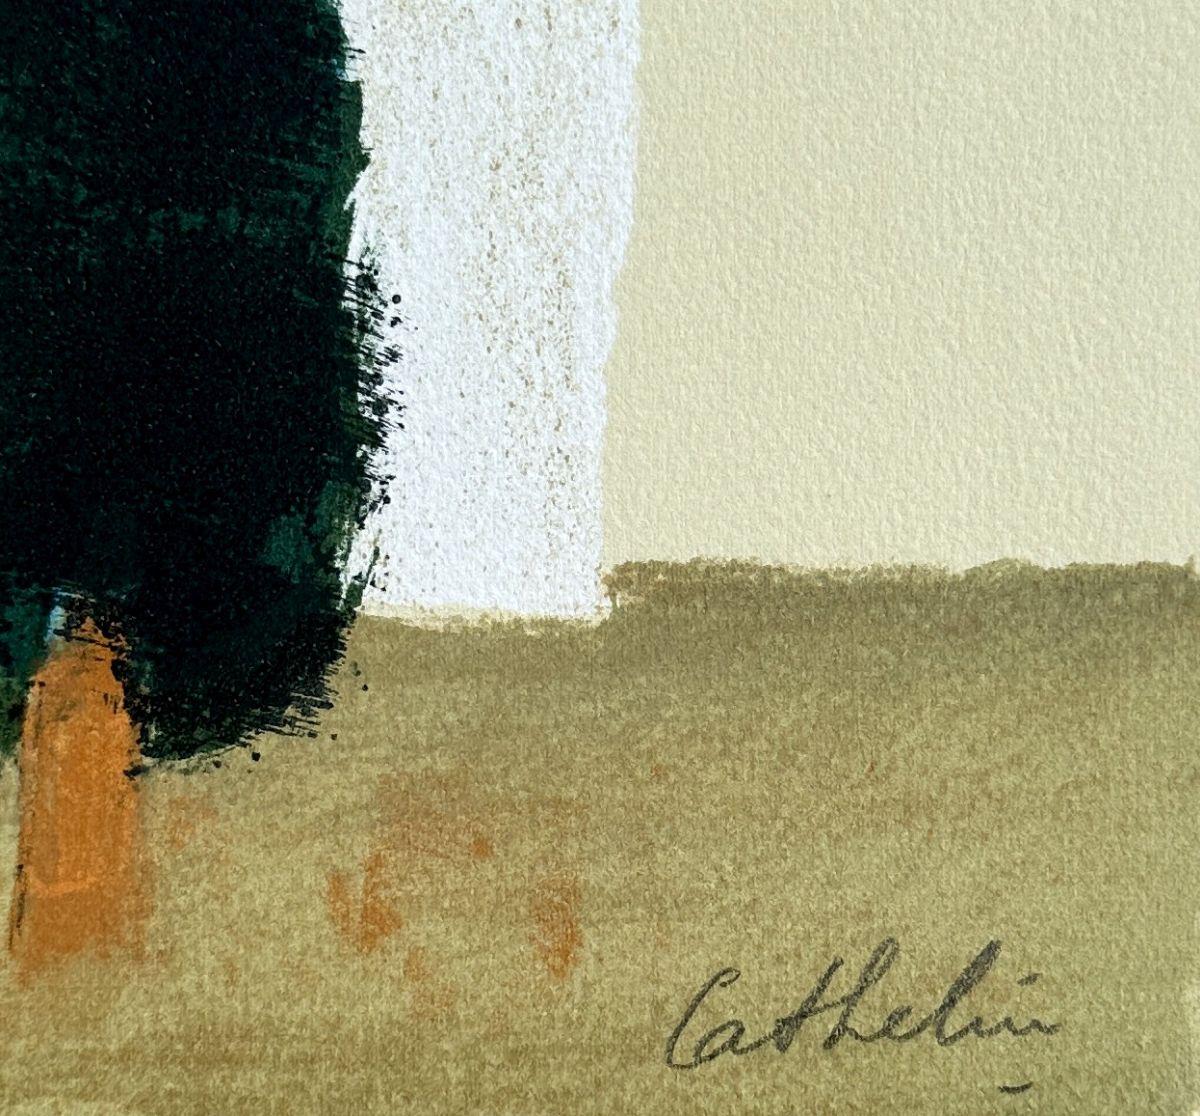 Bernard CATHELIN
Les arbres en Provence

Lithographie originale, 1988
Signé à la main au crayon
Inscrit EA (épreuve d'artiste) en marge de l'édition de 100 exemplaires
Sur papier Arches, format 40 x 31 (c. 15 8/10 x 12 1/5 inches)
Très bon